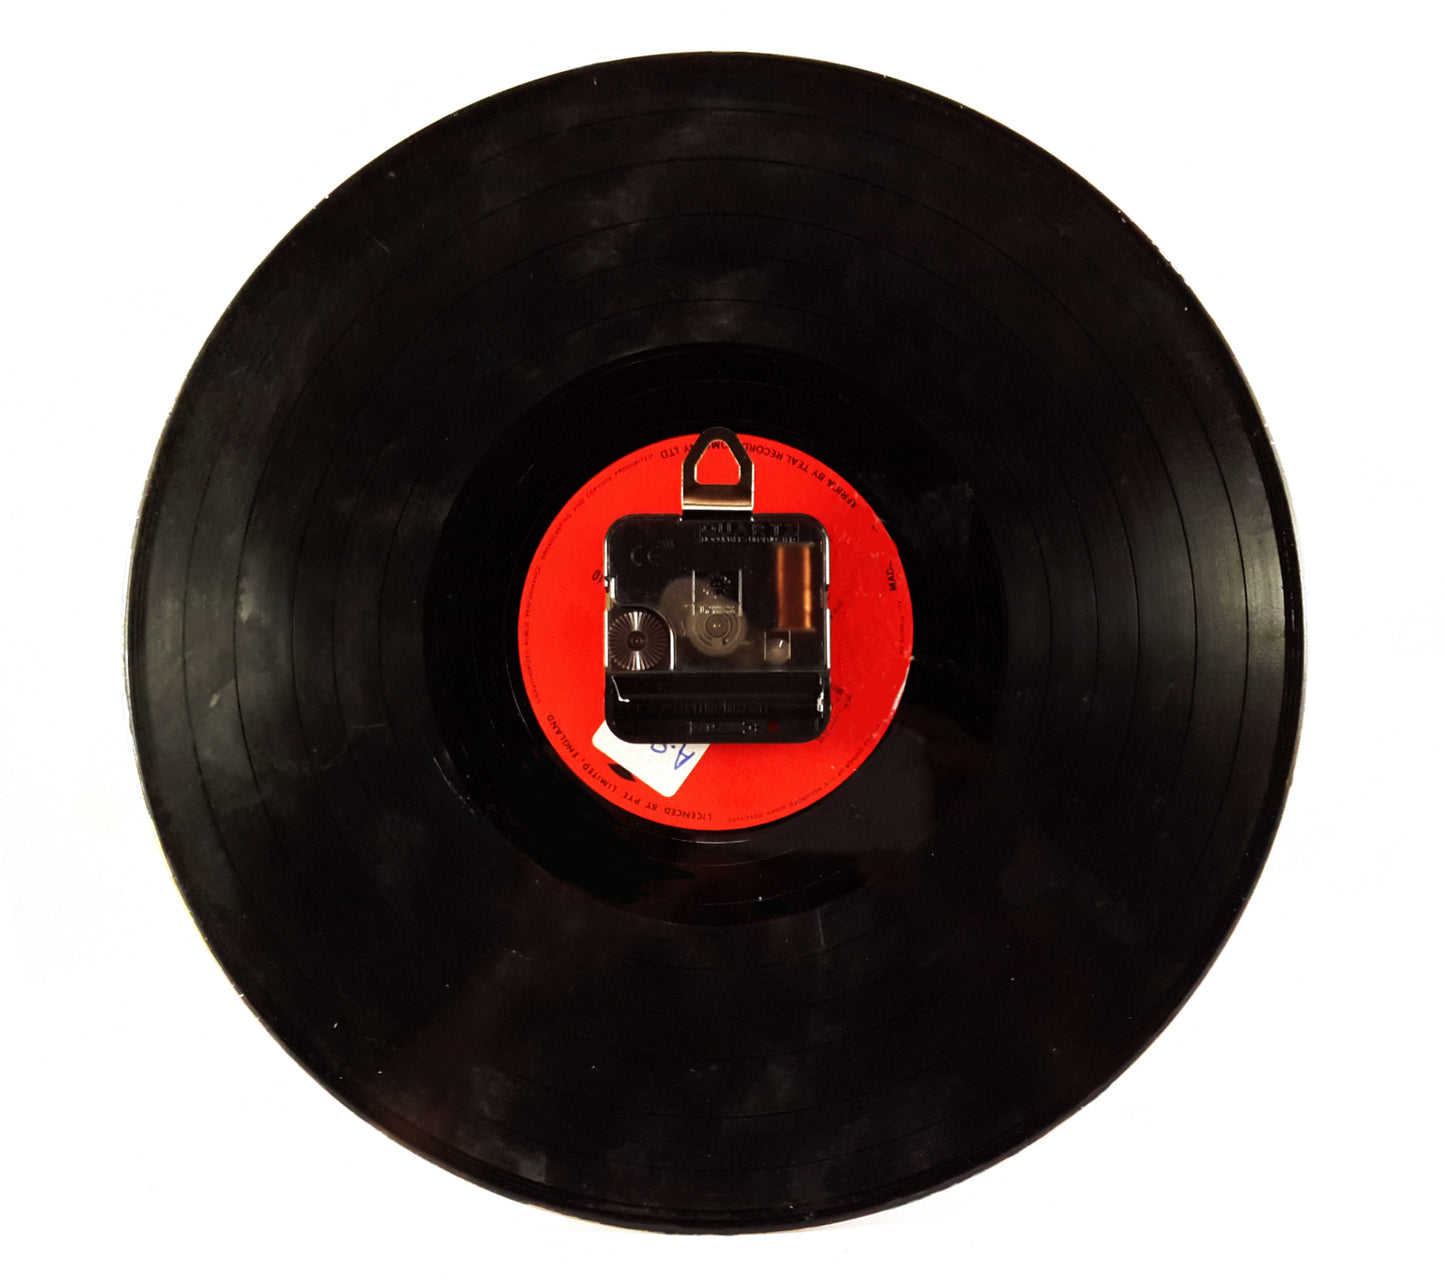  Manchester City Vinyl Clock freeshipping - Pubstuff 391.00